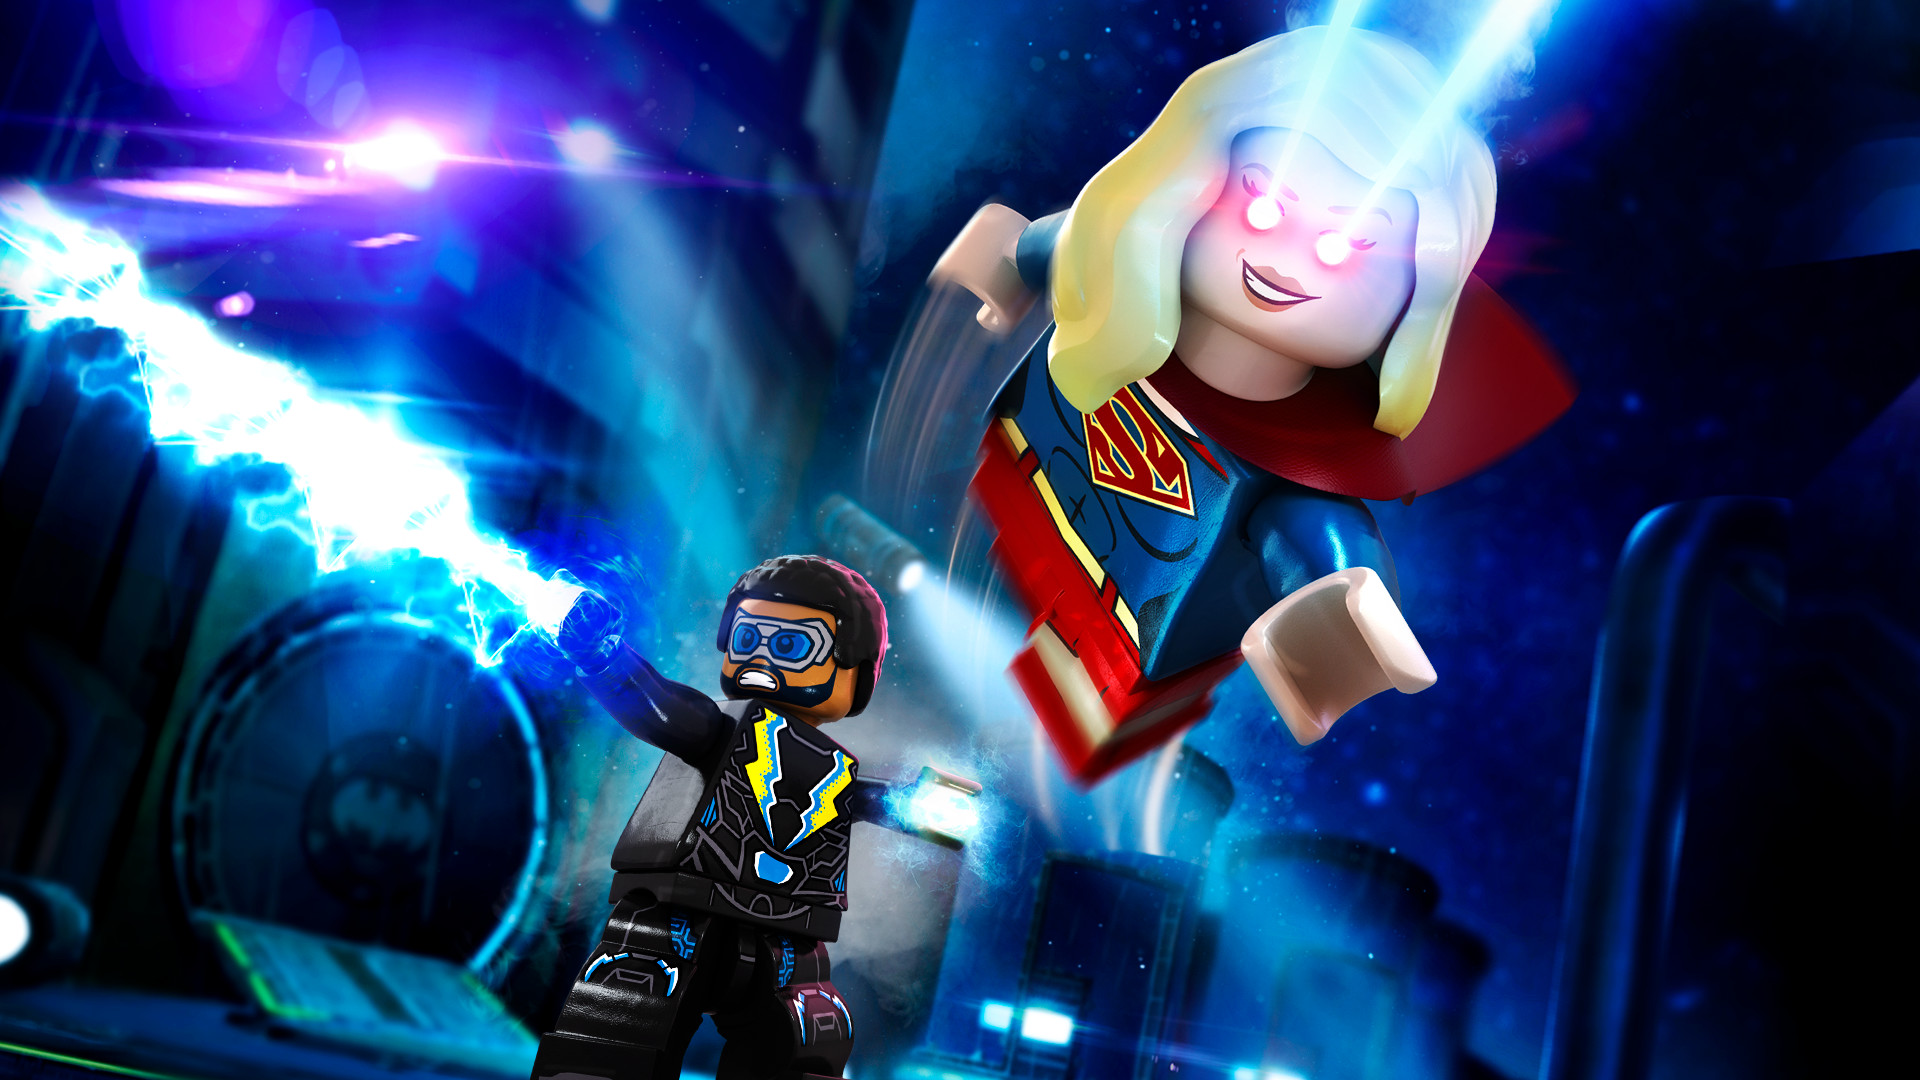 LEGO DC Super-Villains - DC TV Series Super Heroes Character Pack DLC EU PS4 CD Key